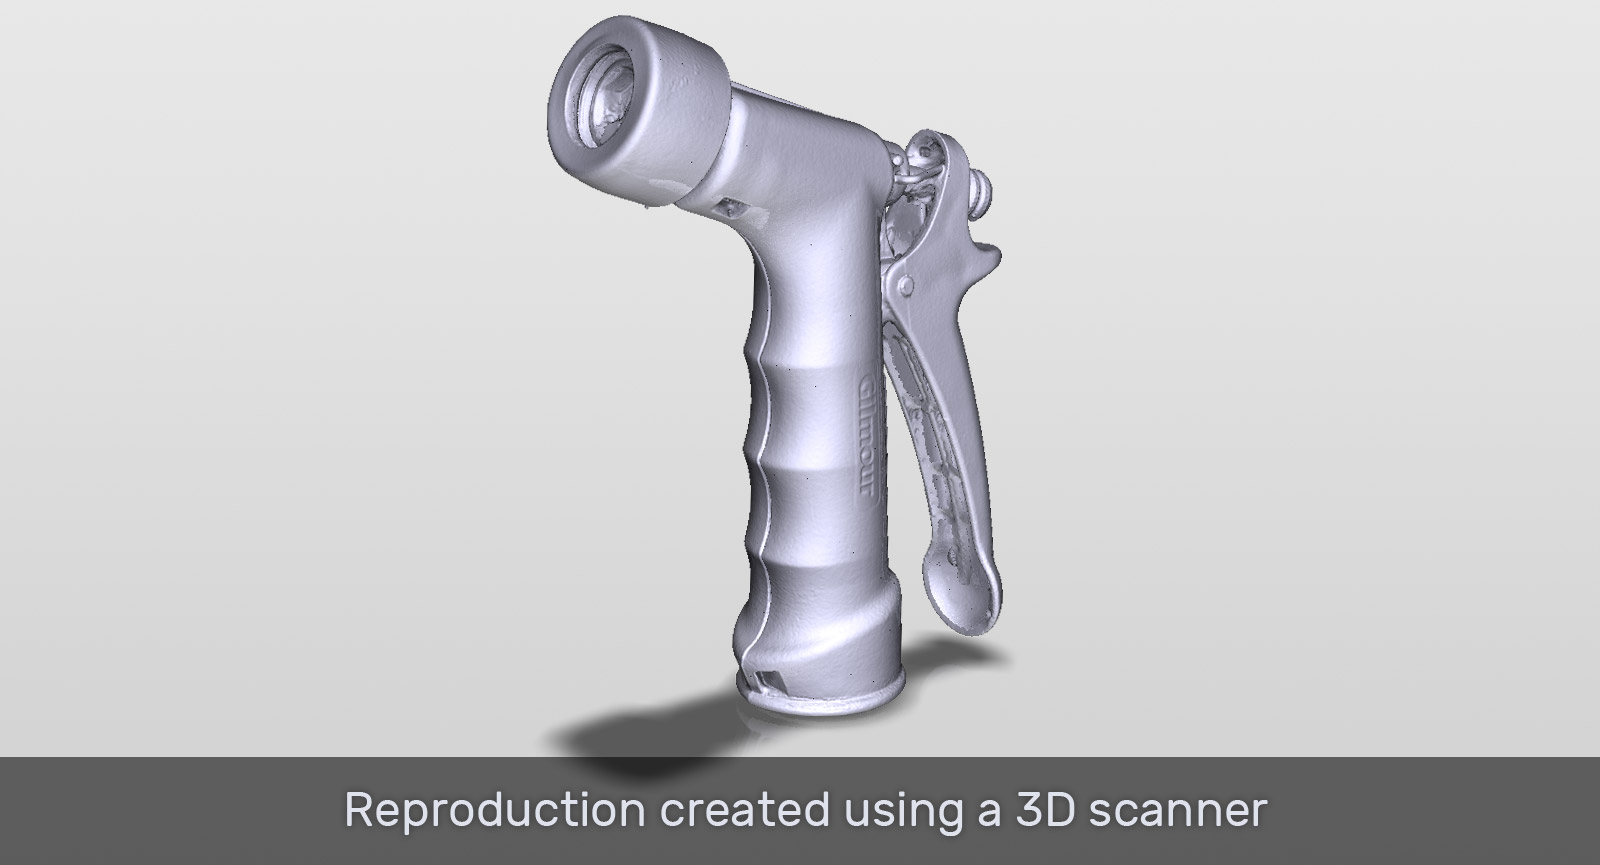 3D scanner nozzle comparison Scan object 3D scanning